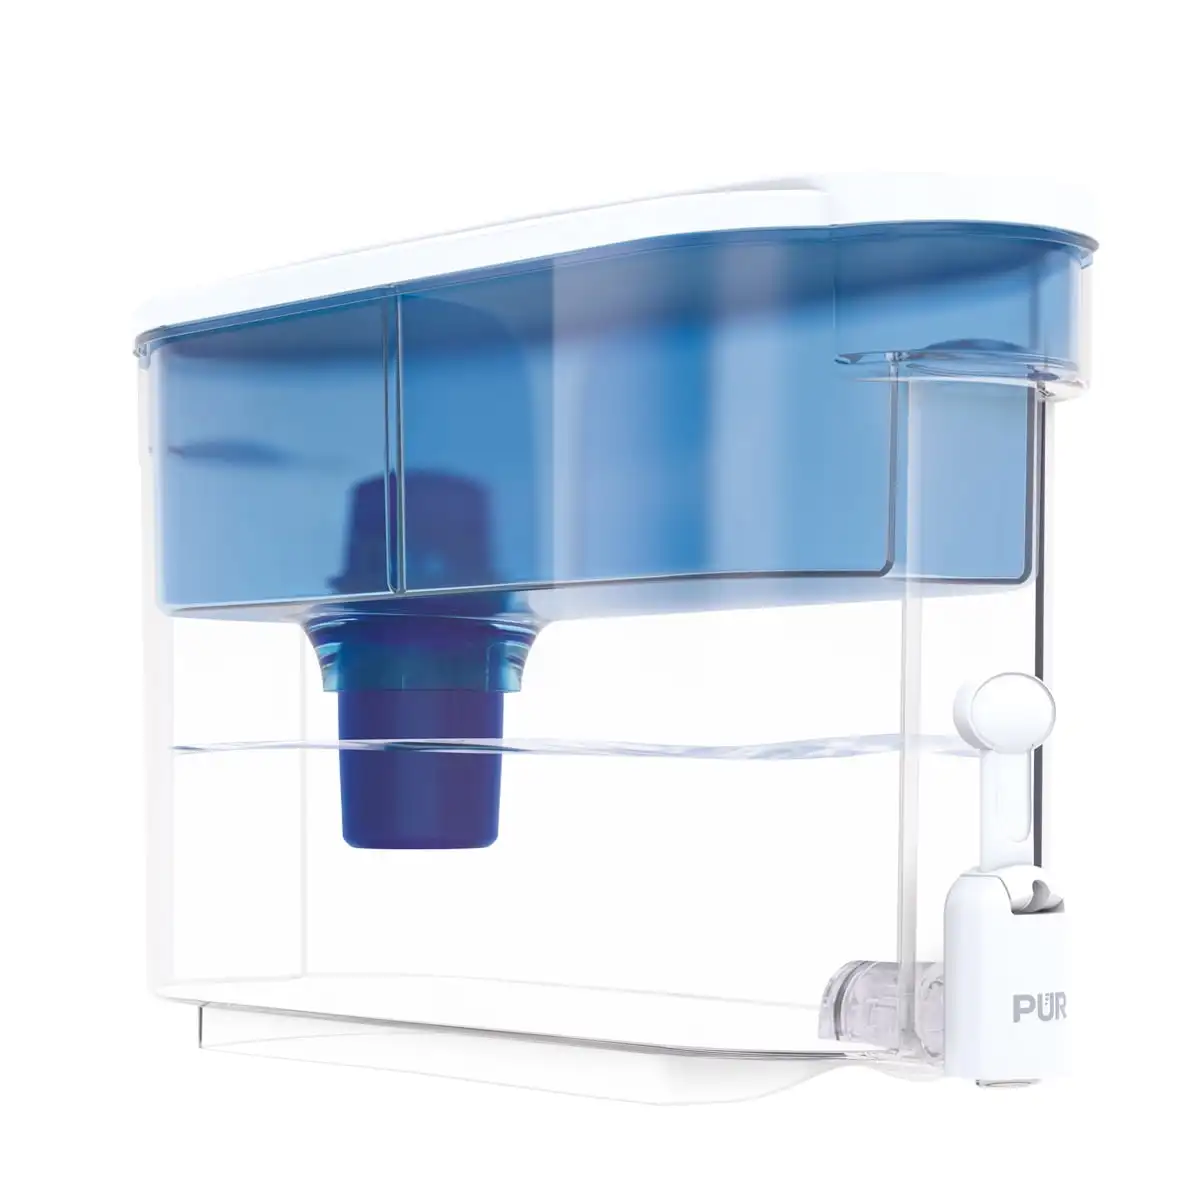 PUR 30 sistema da filtragem do distribuidor do copo, azul, 15,3 "x H 10,1" x L 5,3 ", DS1800ZAV4